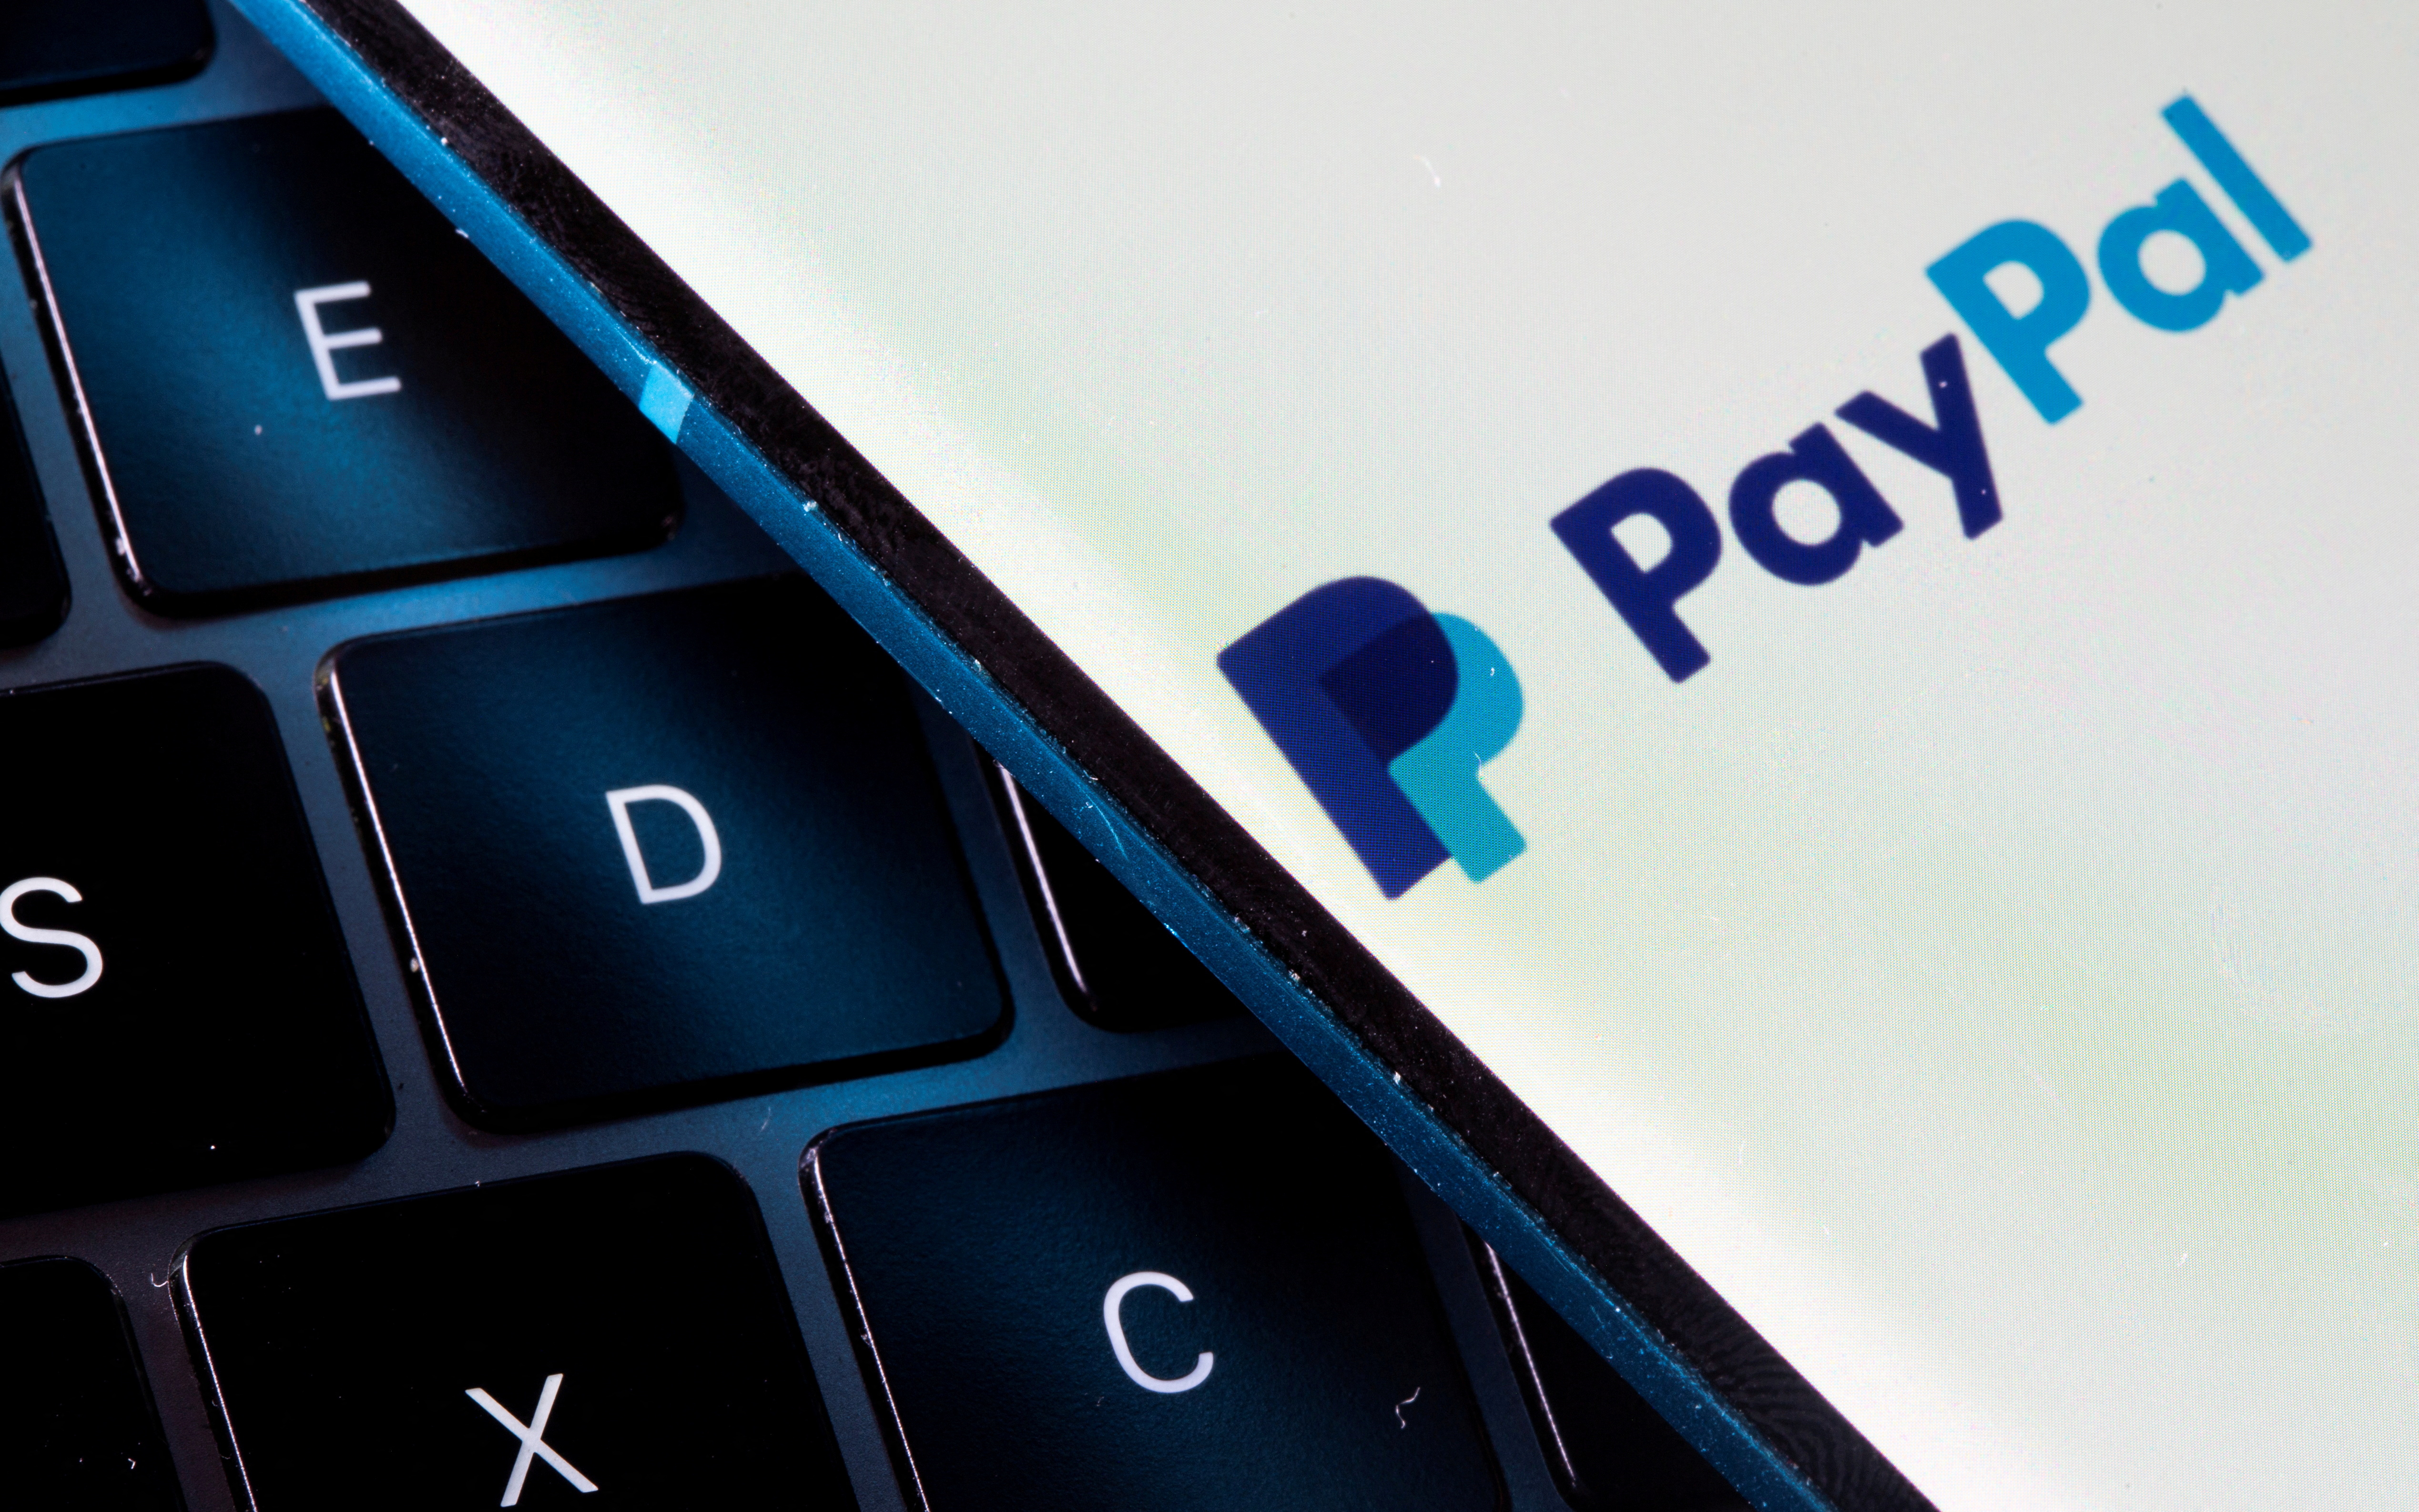 Paypal que es un servicio financiero internacional de pagos online que permite a sus usuarios comprar productos. REUTERS/Dado Ruvic/Illustration/File Photo